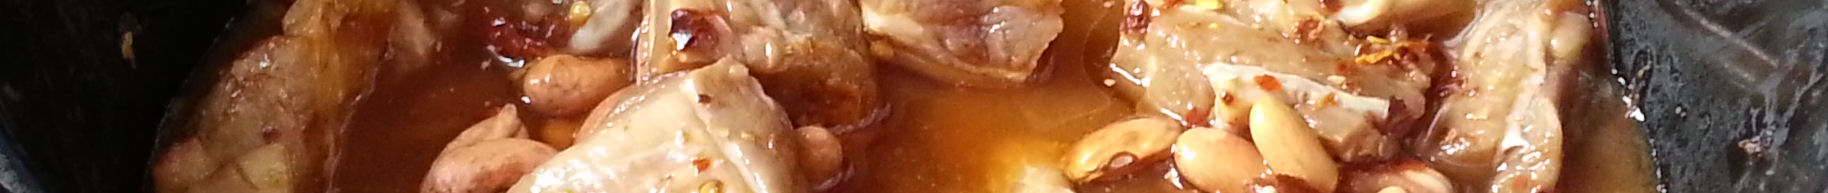 Raw Belly Pork in Thai Chilli Sauce